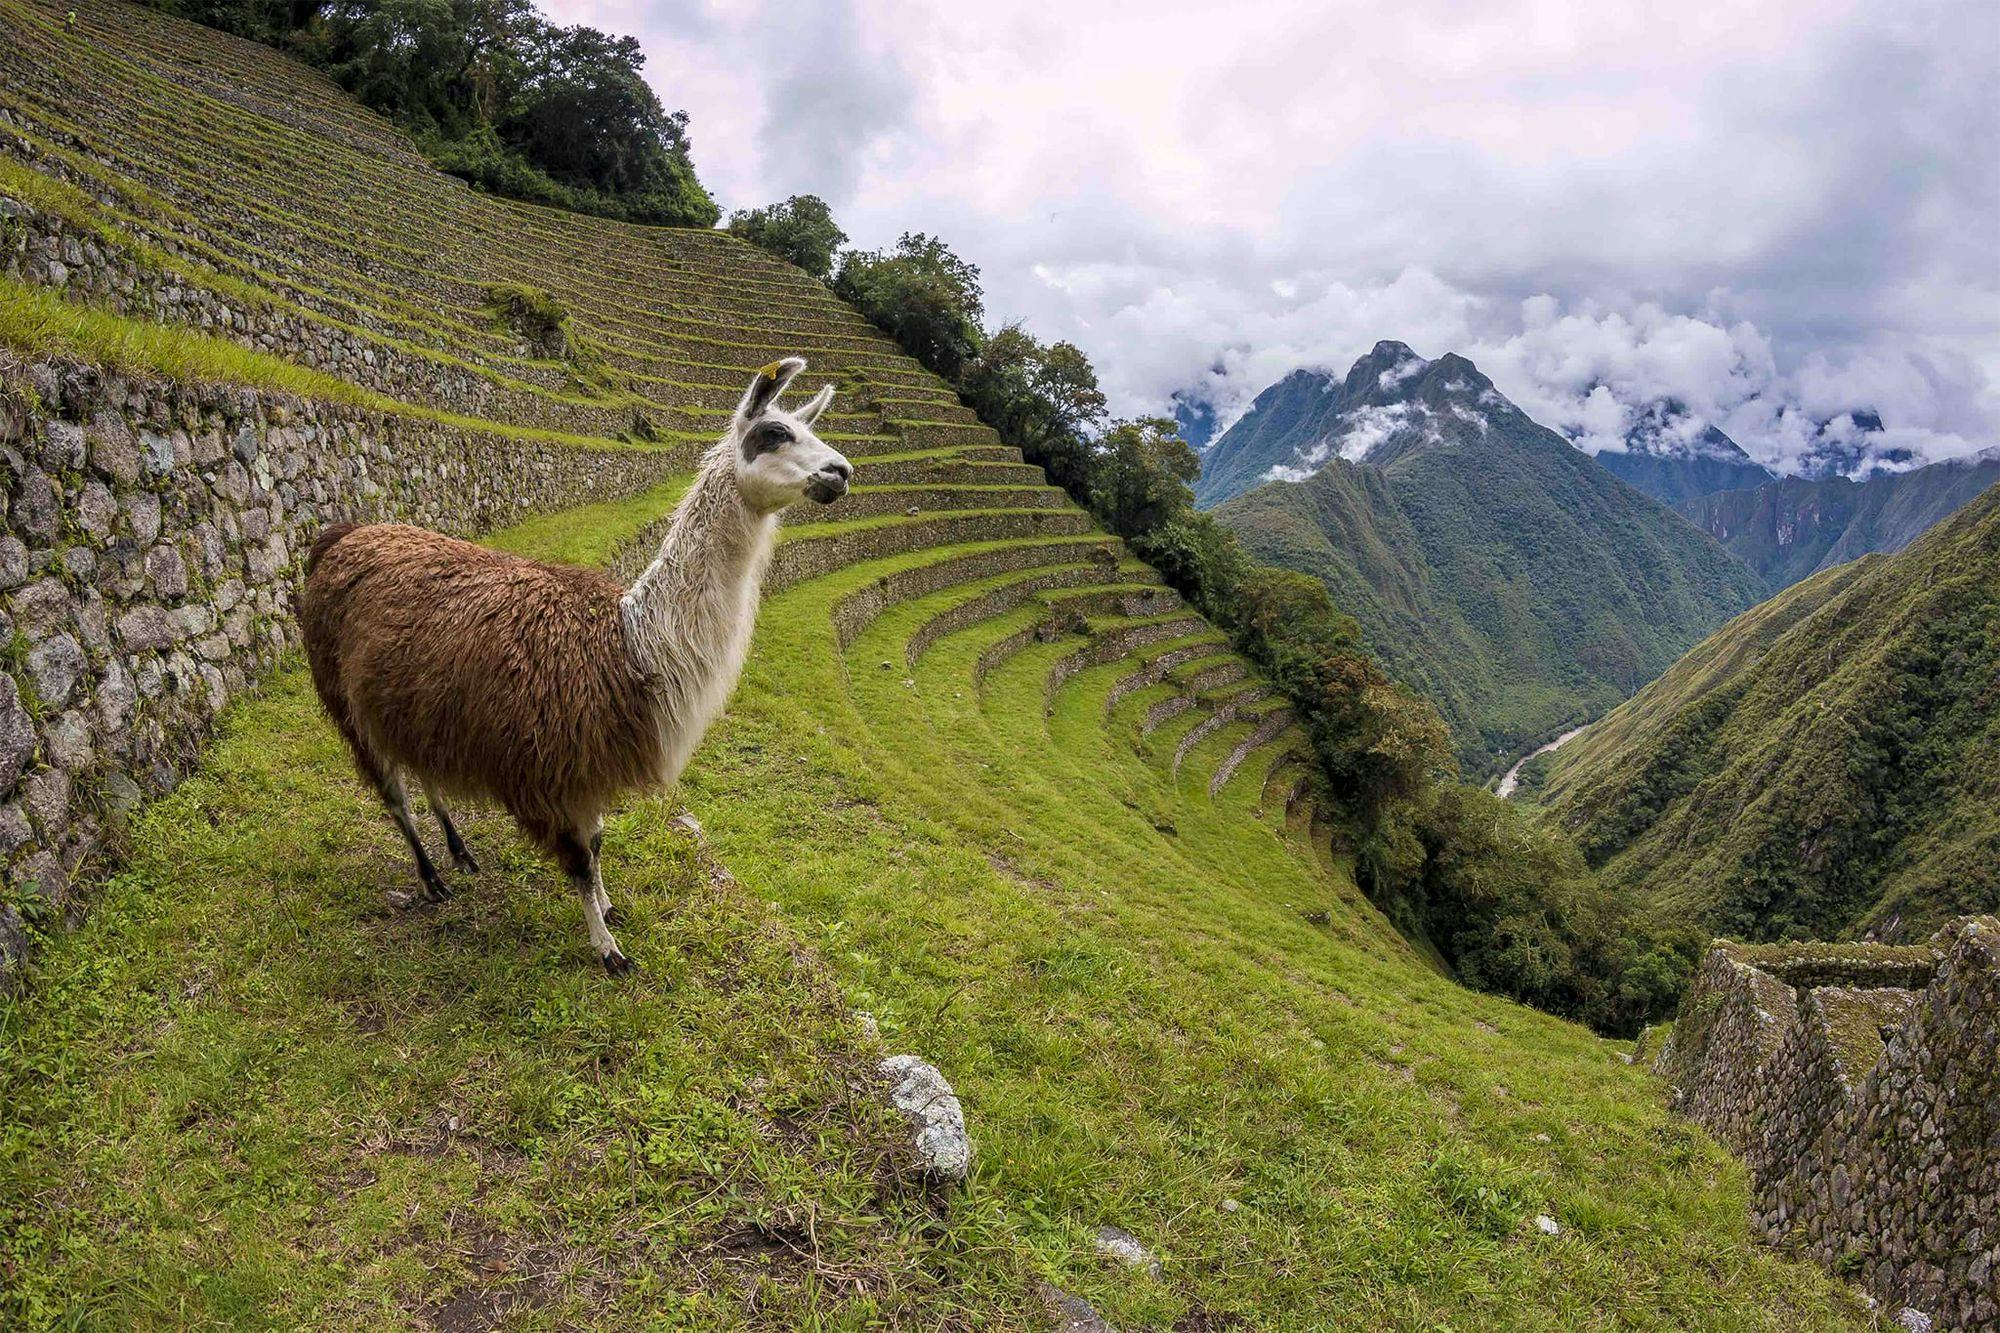 Classic Inca Trail To Machu Picchu - 4 Days